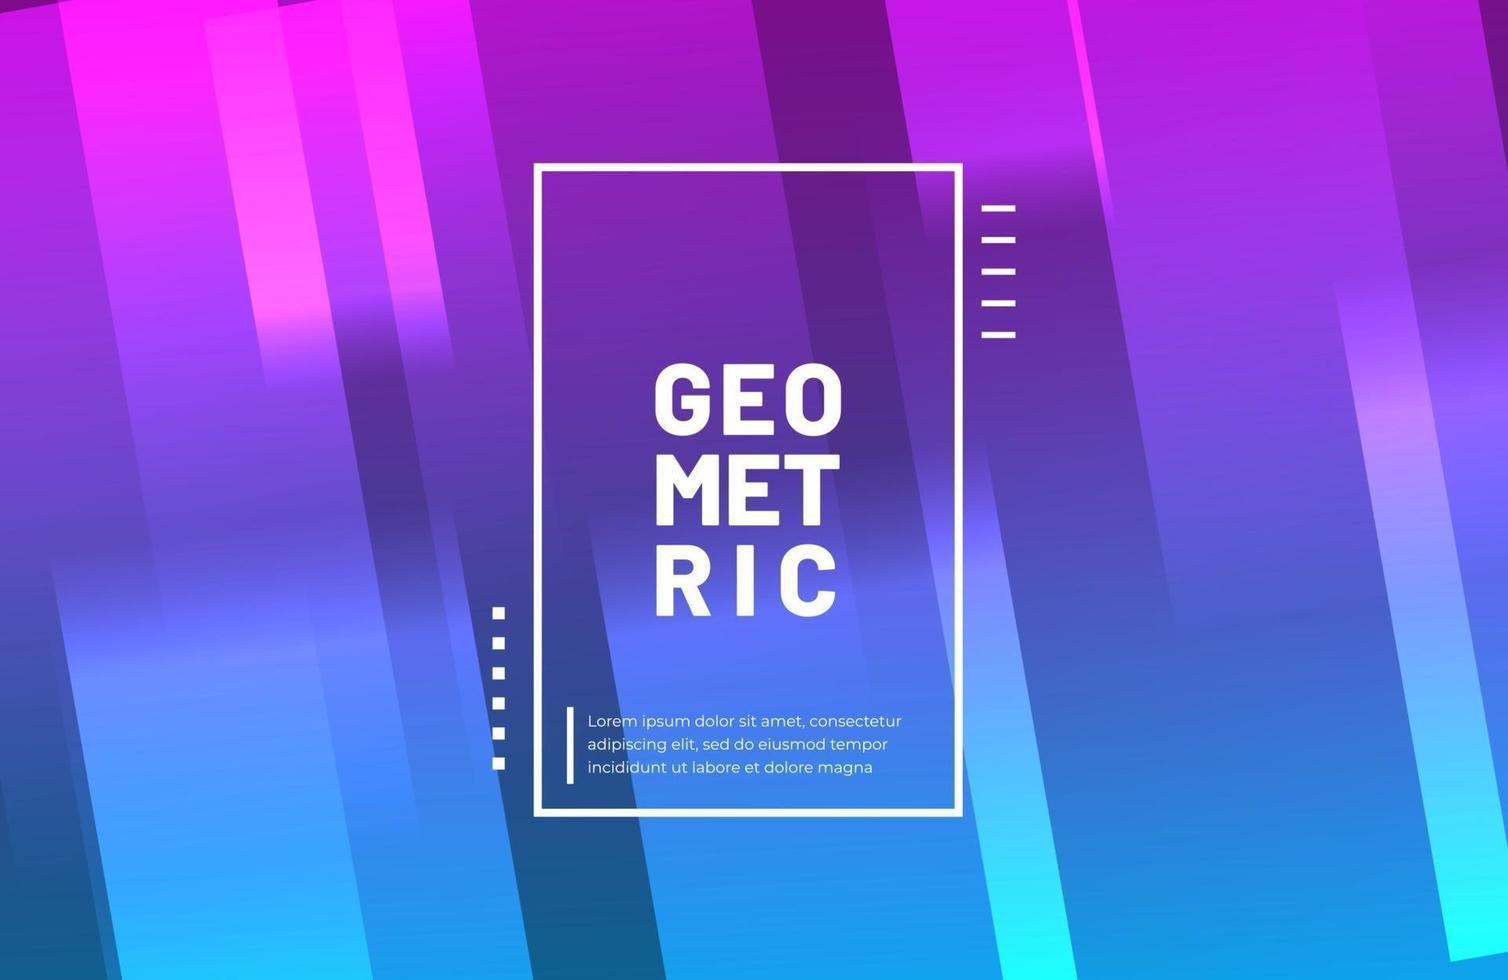 Fondo geométrico abstracto con color degradado moderno vector